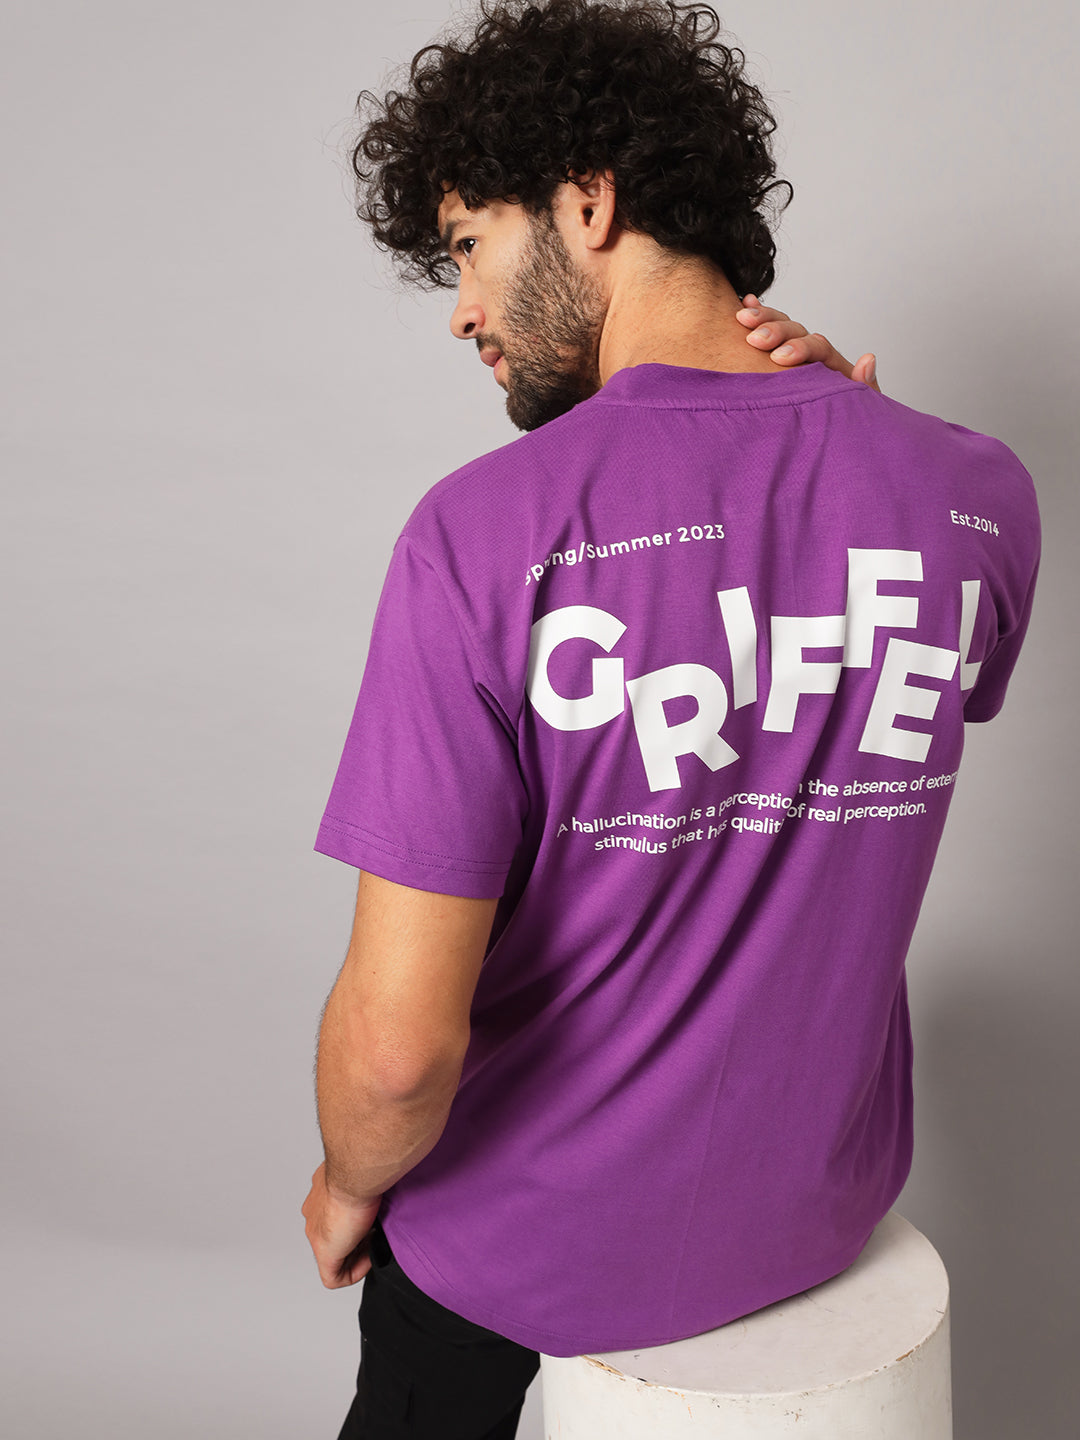 GRIFFEL Men Dark Purple HALLUCINATION Oversized T-shirt - griffel